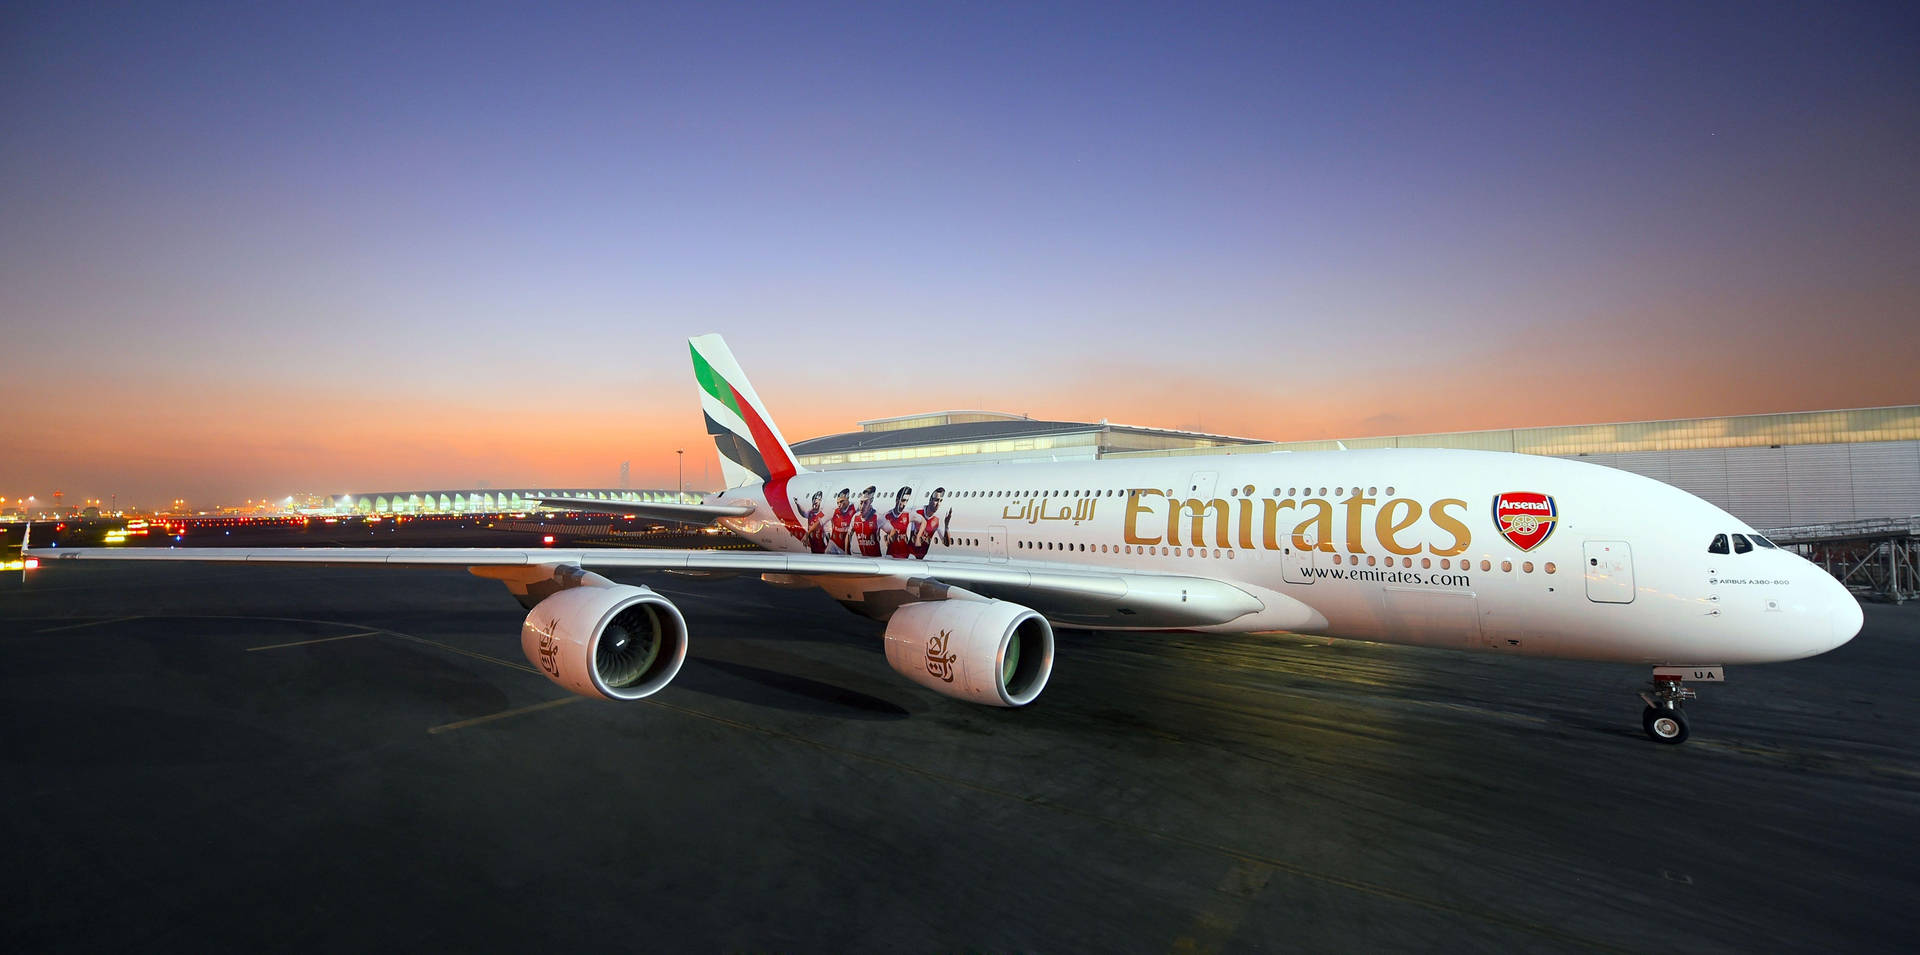 Emirates Arsenal Airplane Model Wallpaper